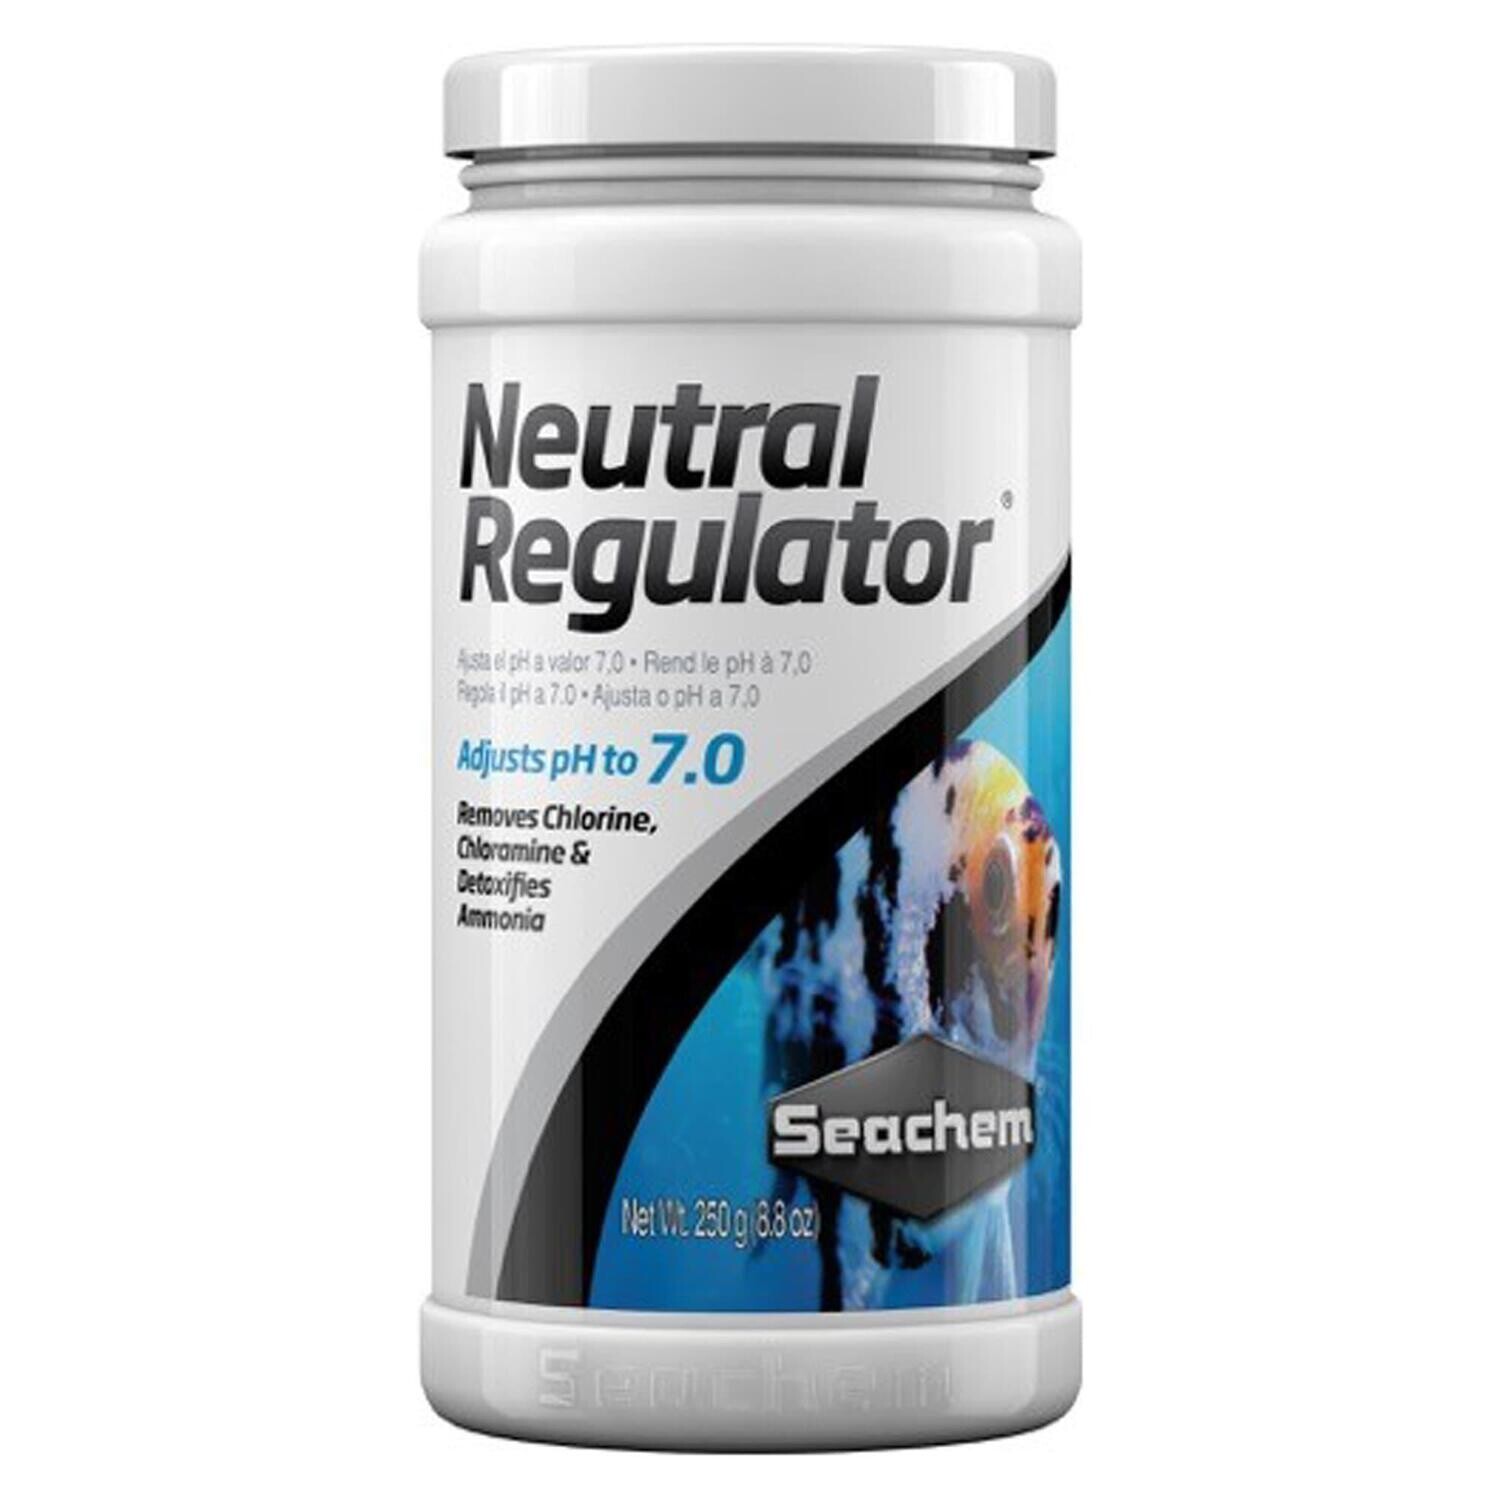 Seachem Neutral Regulator 250g/8.8oz